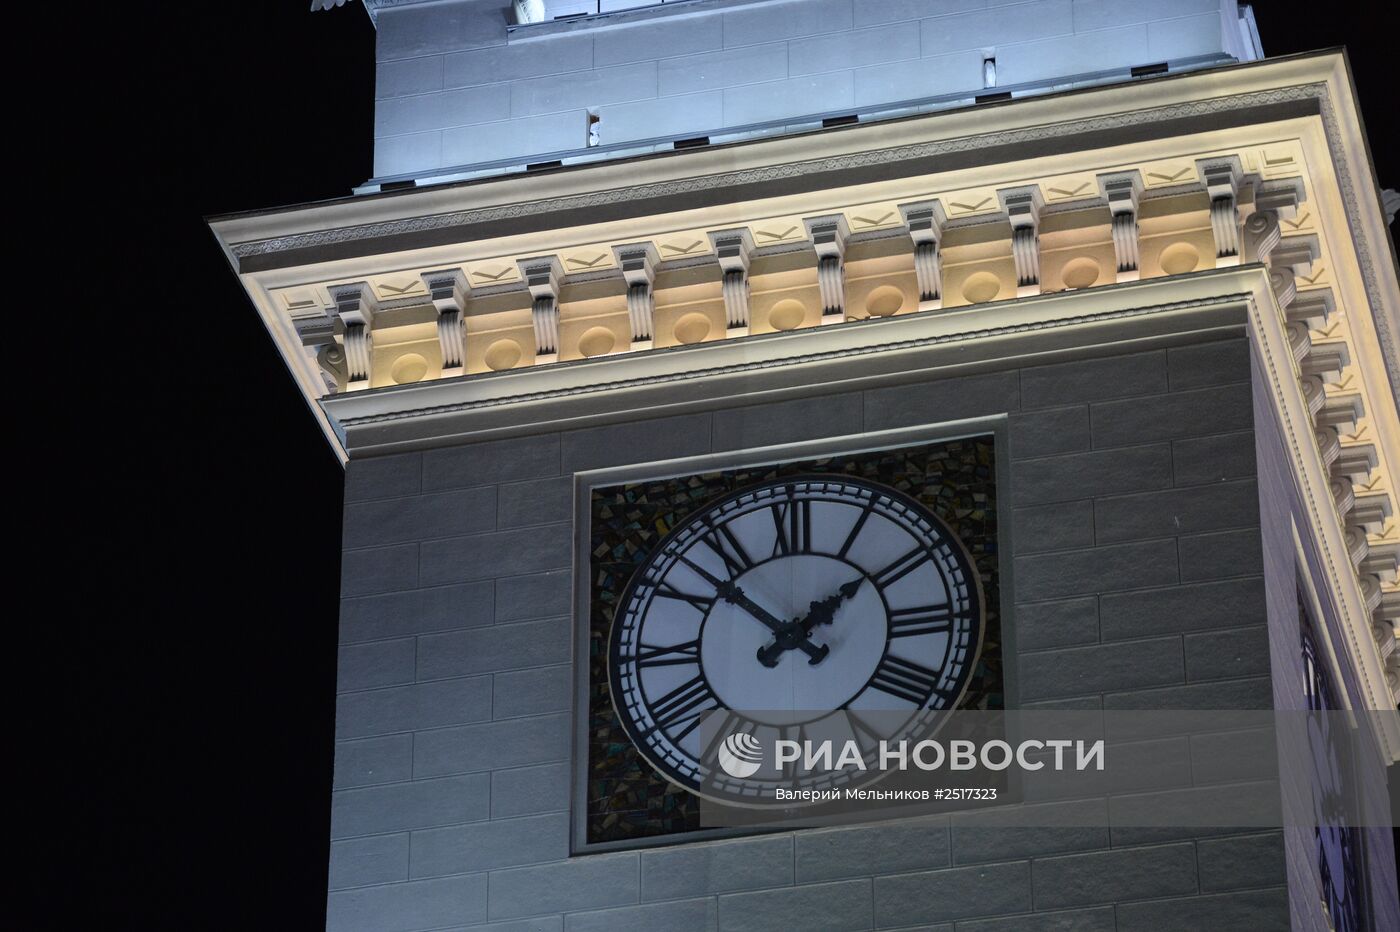 Перевод часов на зимнее время на Киевском вокзале в Москве